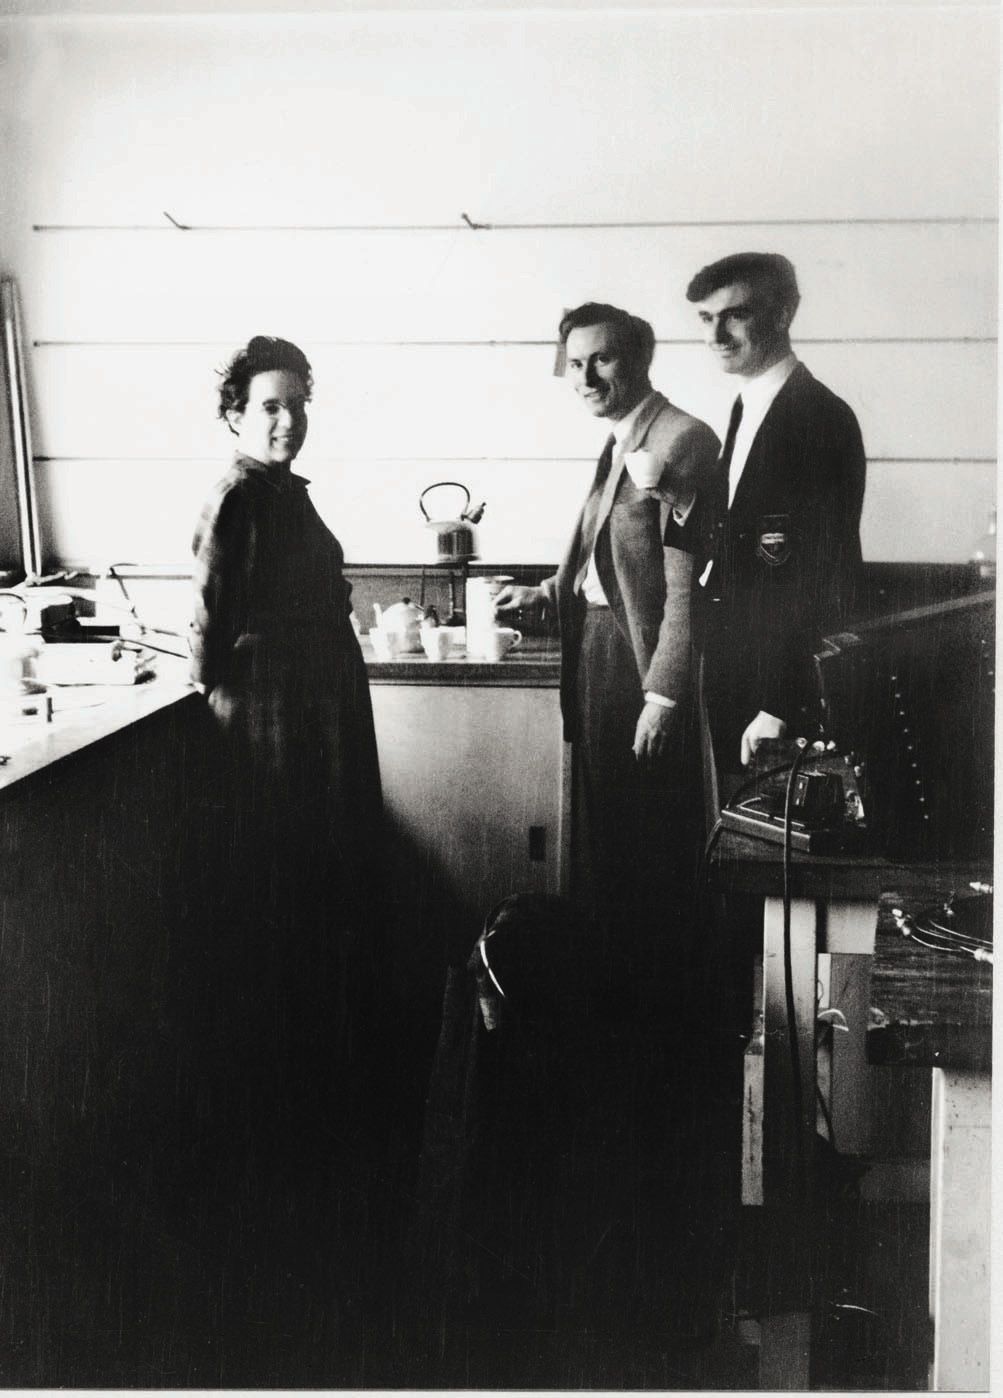 Foto di Maria Fidecaro, nel 1955, con Alec Merrison (poi sir Alec) e Alan Wetherell presso il “Nuclear Physics Research Laboratory” dell’Università di Liverpool.